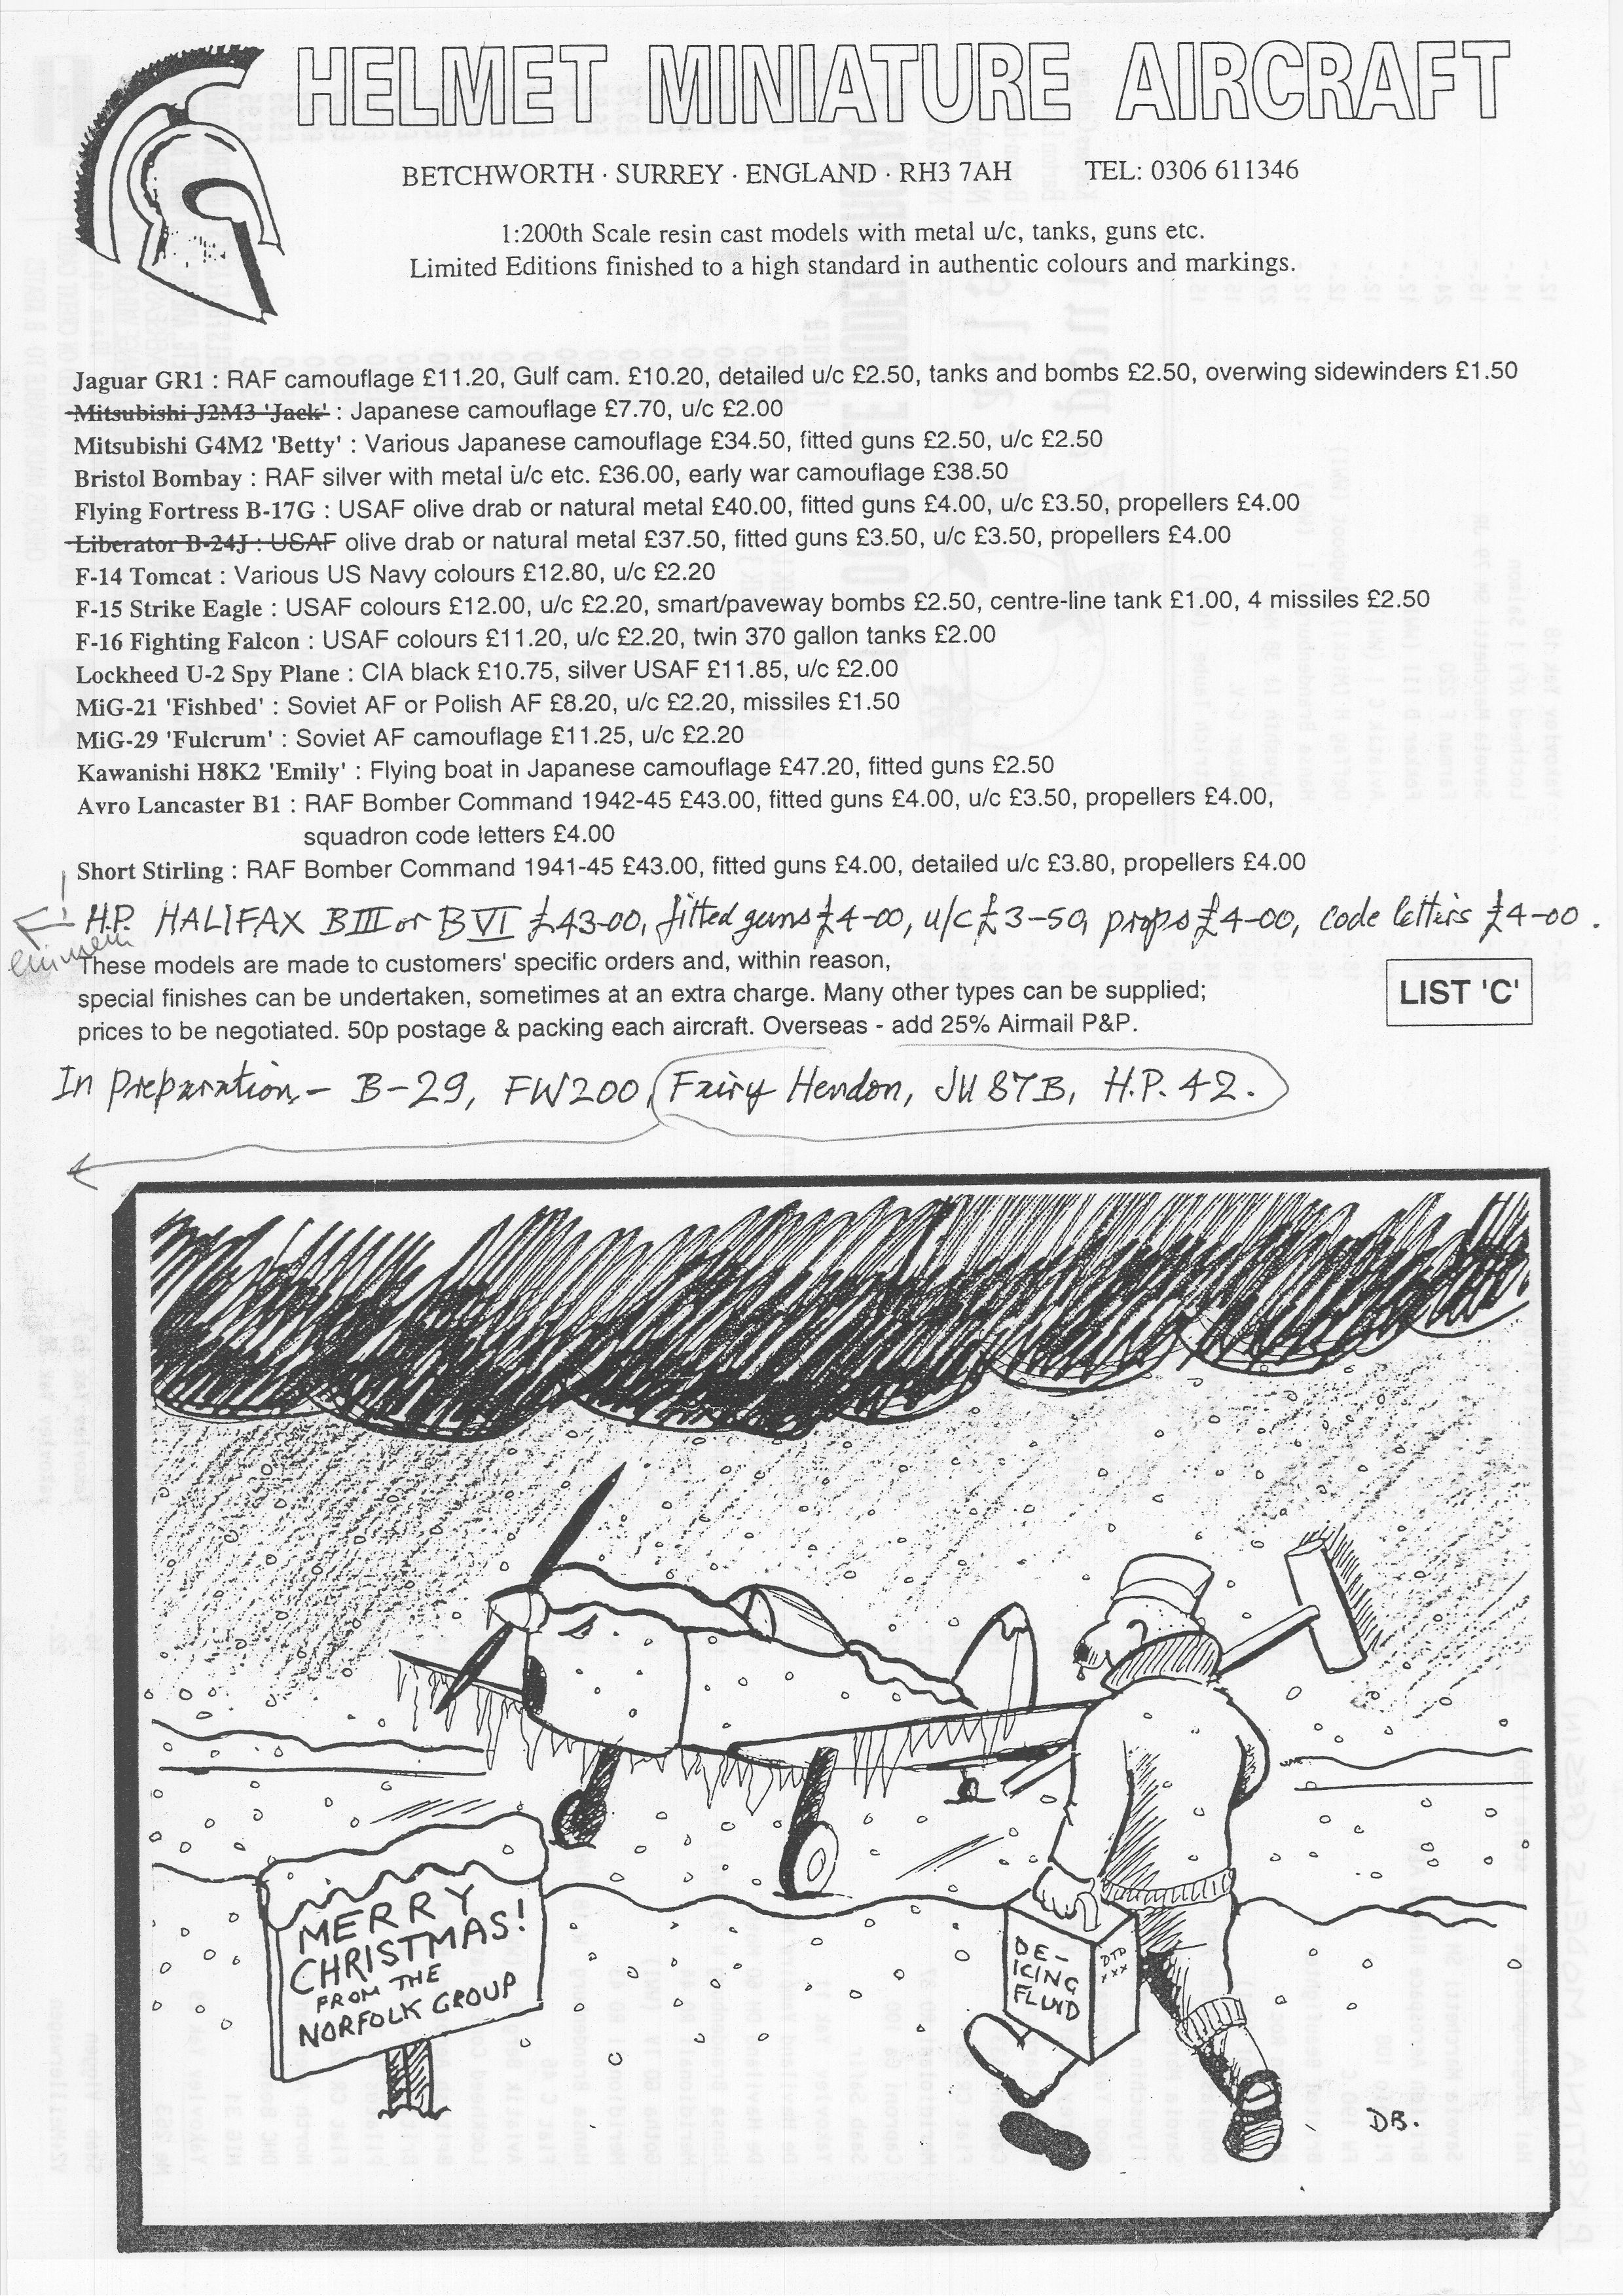 Norfolk Group_Newsletter No.4_November 199321.jpg